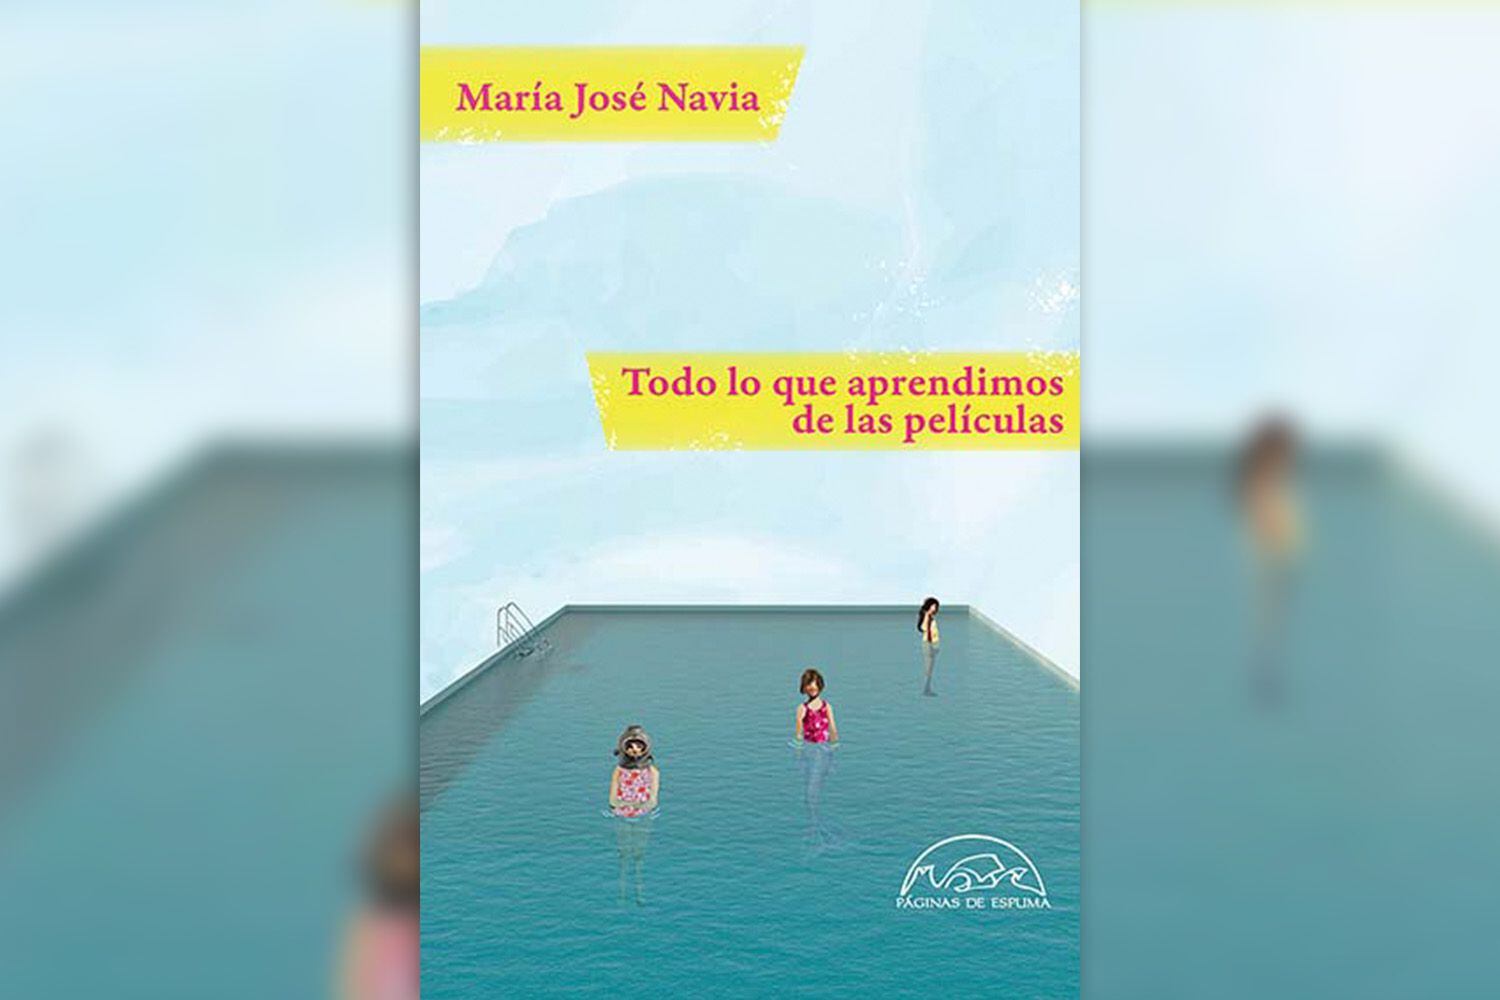 Portada del libro "Todo lo que aprendimos de las películas", de María José Navia, título finalista del Premio Internacional Ribera del Duero 2022. (Páginas de Espuma).